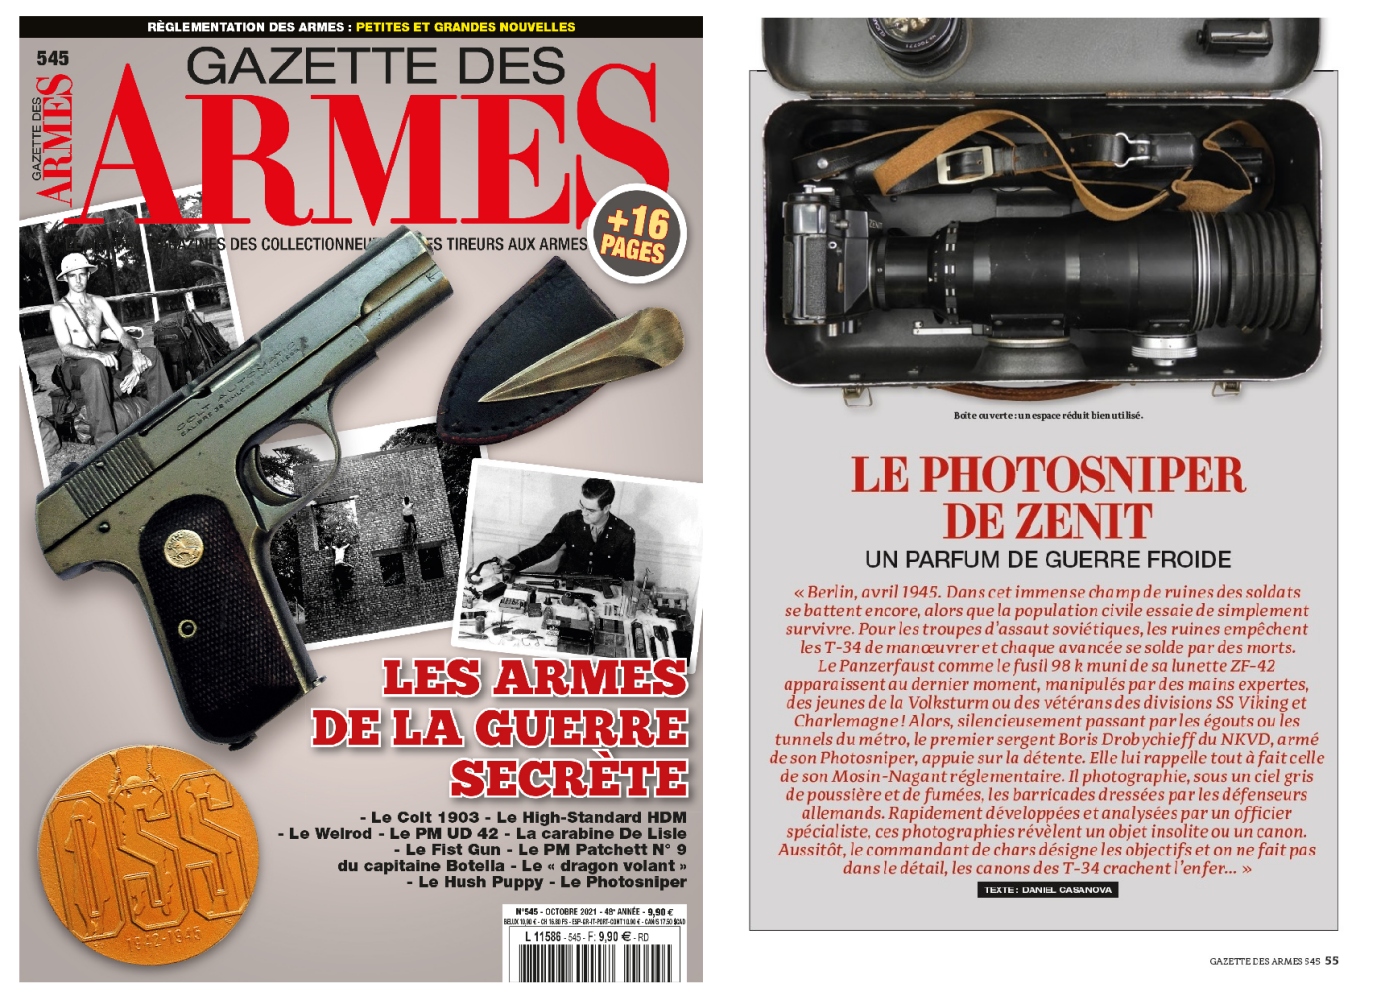 L’article consacré au fusil photographique Photosniper a été publié sur 5 pages dans le magazine Gazette des Armes n°545 (octobre 2021).